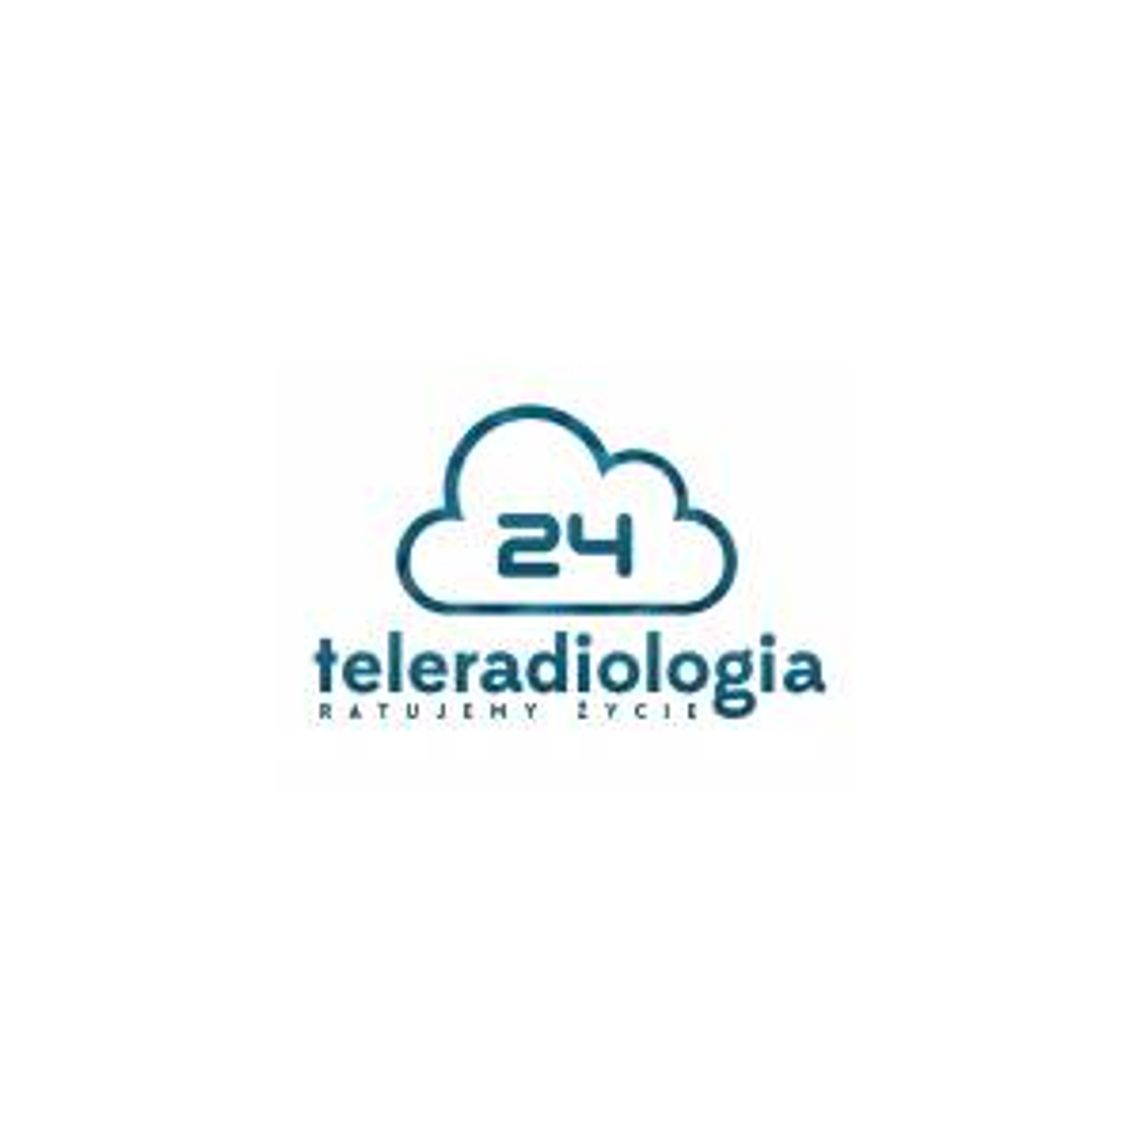 Opis badań mammograficznych - Teleradiogia24